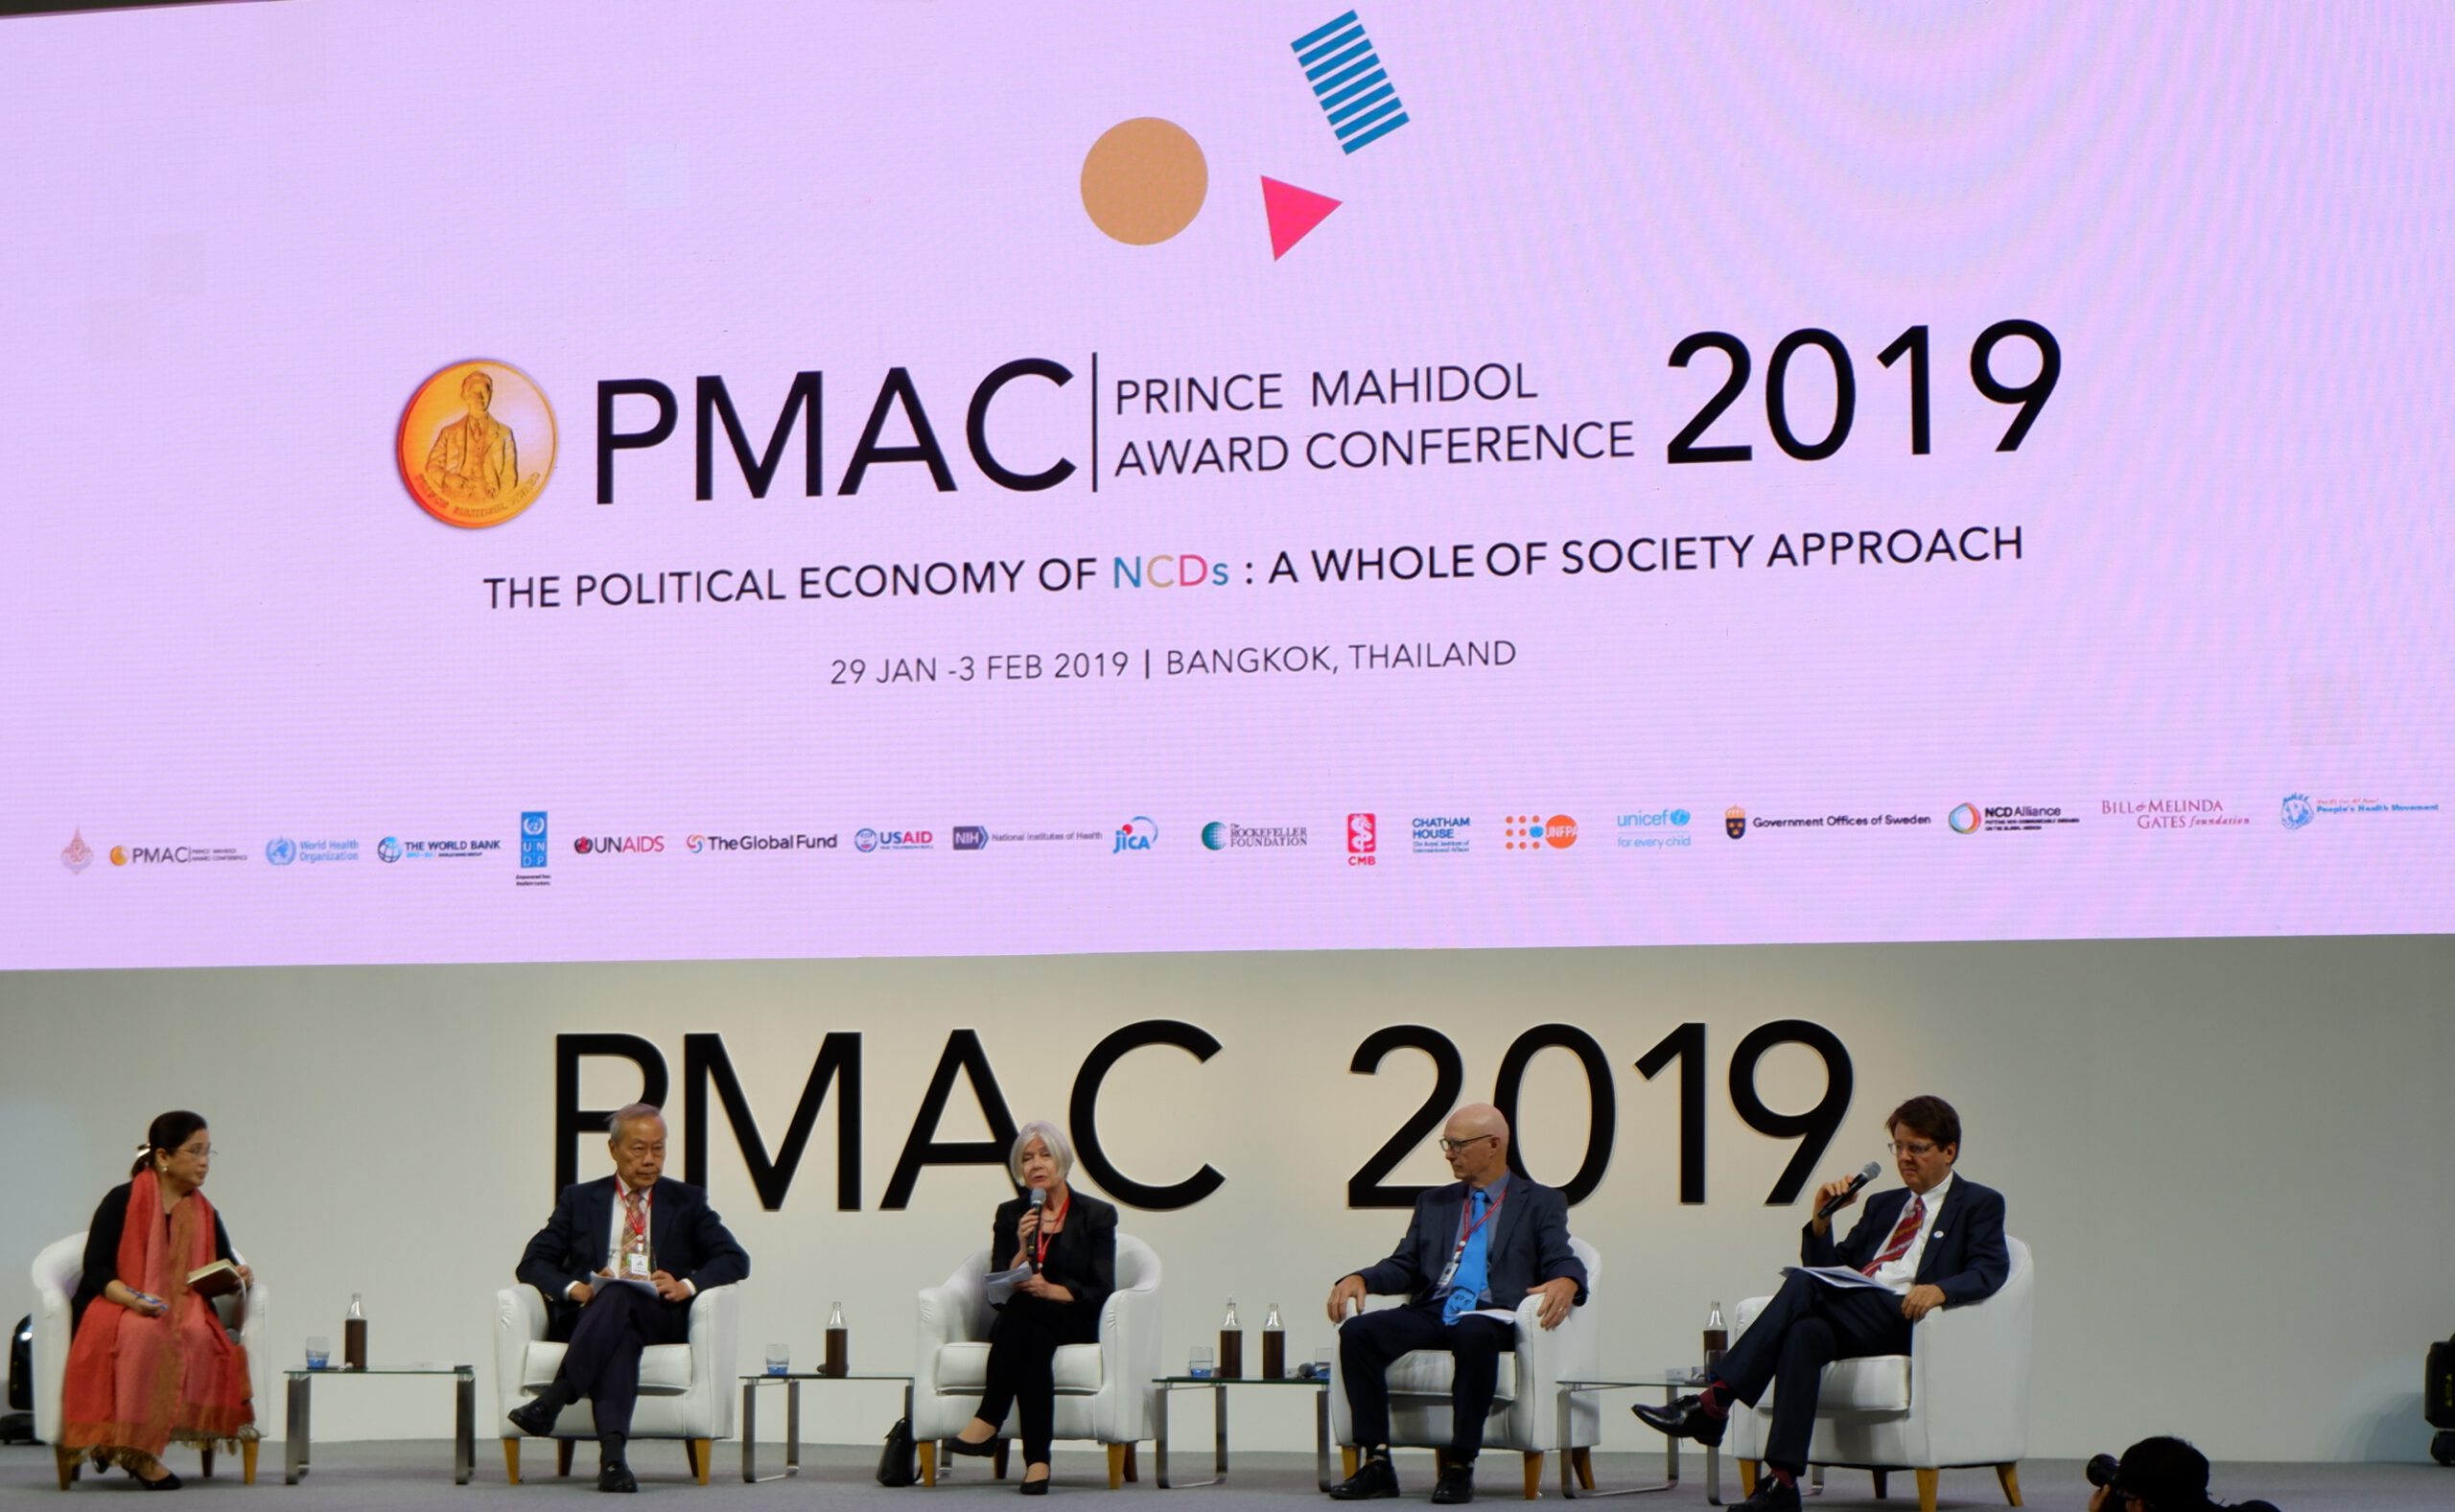 GAPA active at the Prince Mahidol Award Conference 2019 GAPA Global